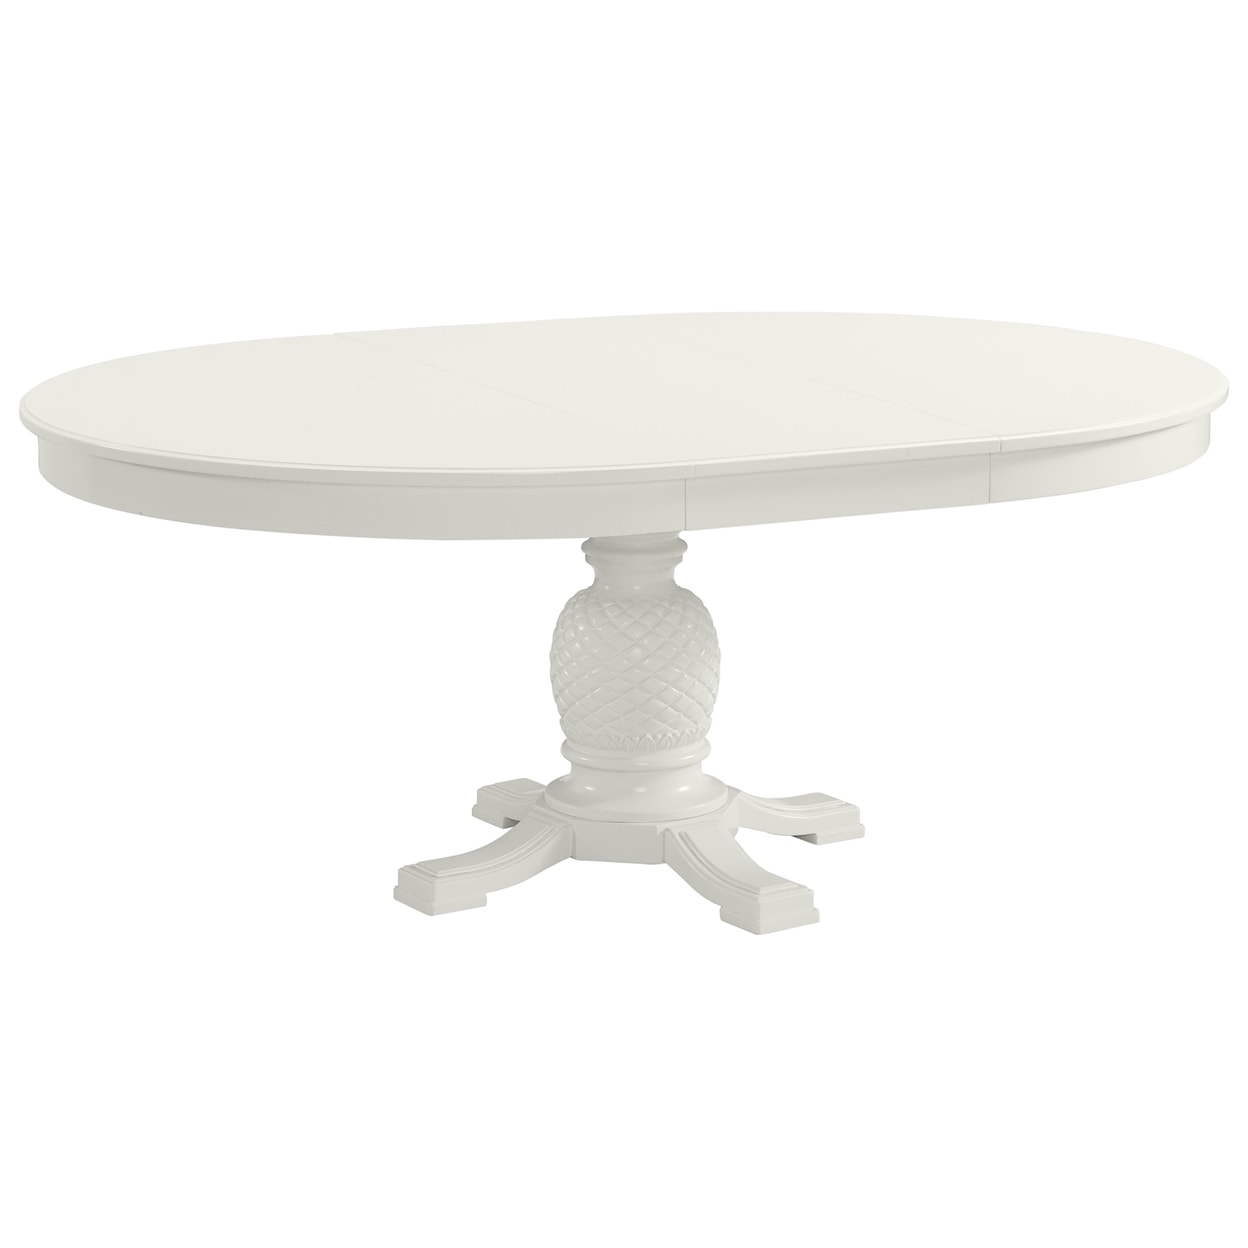 Stillwater Furniture Harbortown Round Pedestal Dining Table